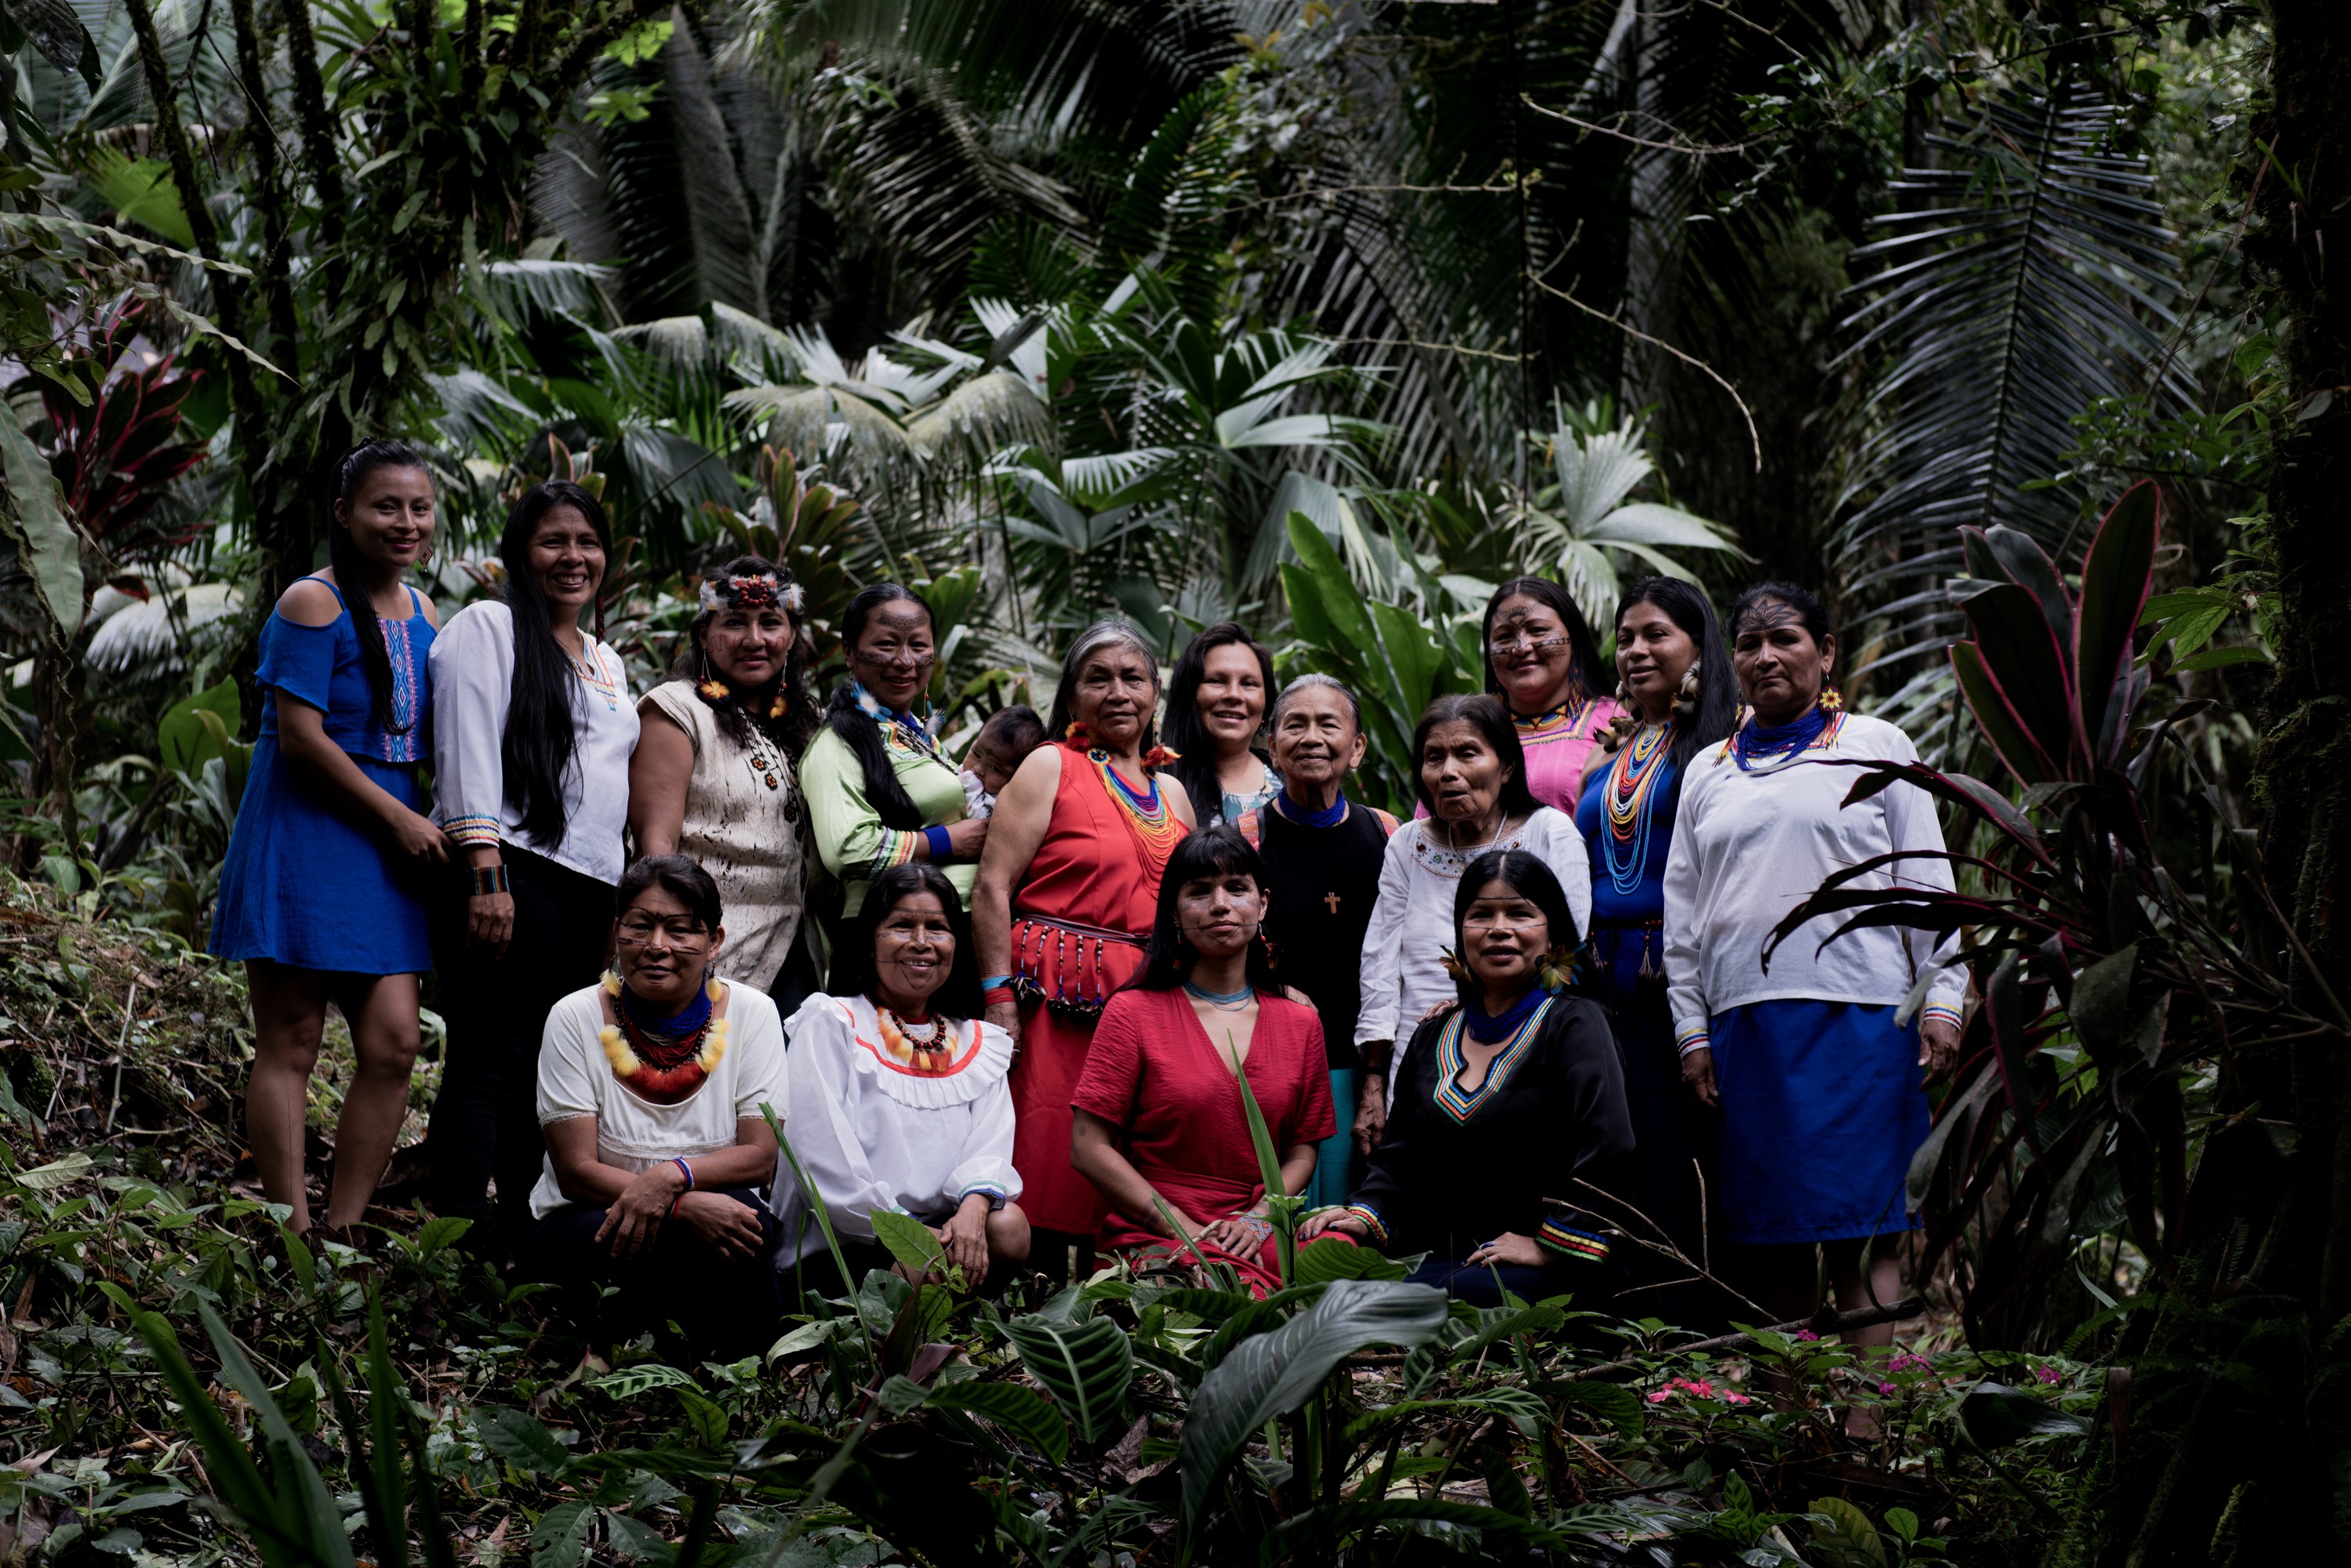 Mujeres Amazonicas é um coletivo de mulheres indígenas de seis nações - os Kichwa, Shuar, Achua, Shiwiar, Sapara e Waorani - lutando contra a violência de gênero e pela proteção da Amazônia das indústrias extrativas (Foto: Alice Aedy)